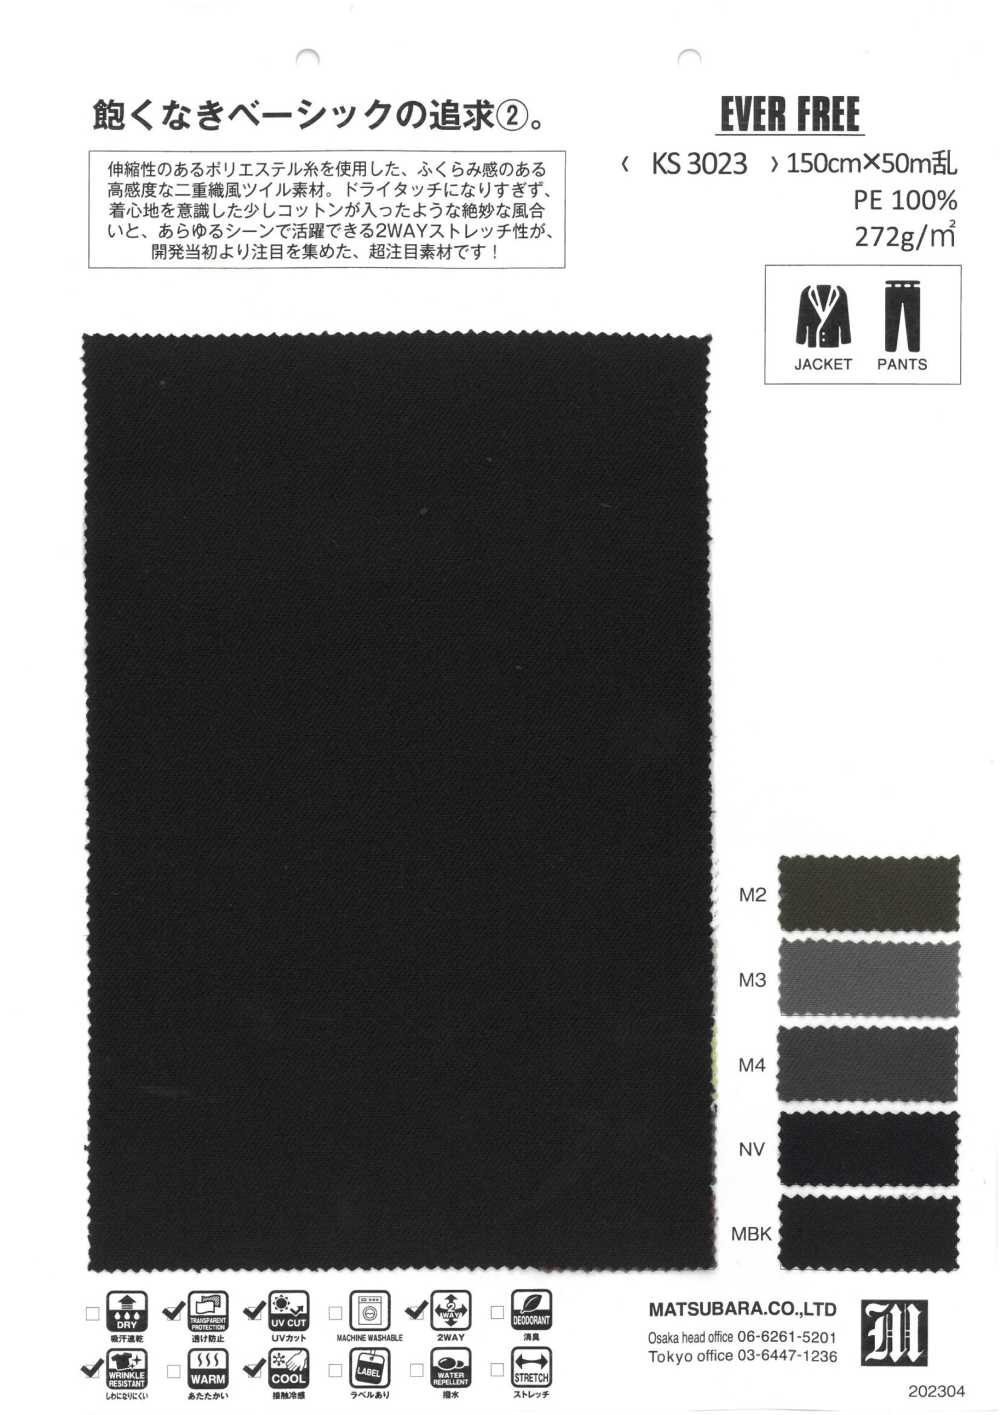 KS3023 EVER FREE[Textile / Fabric] Matsubara